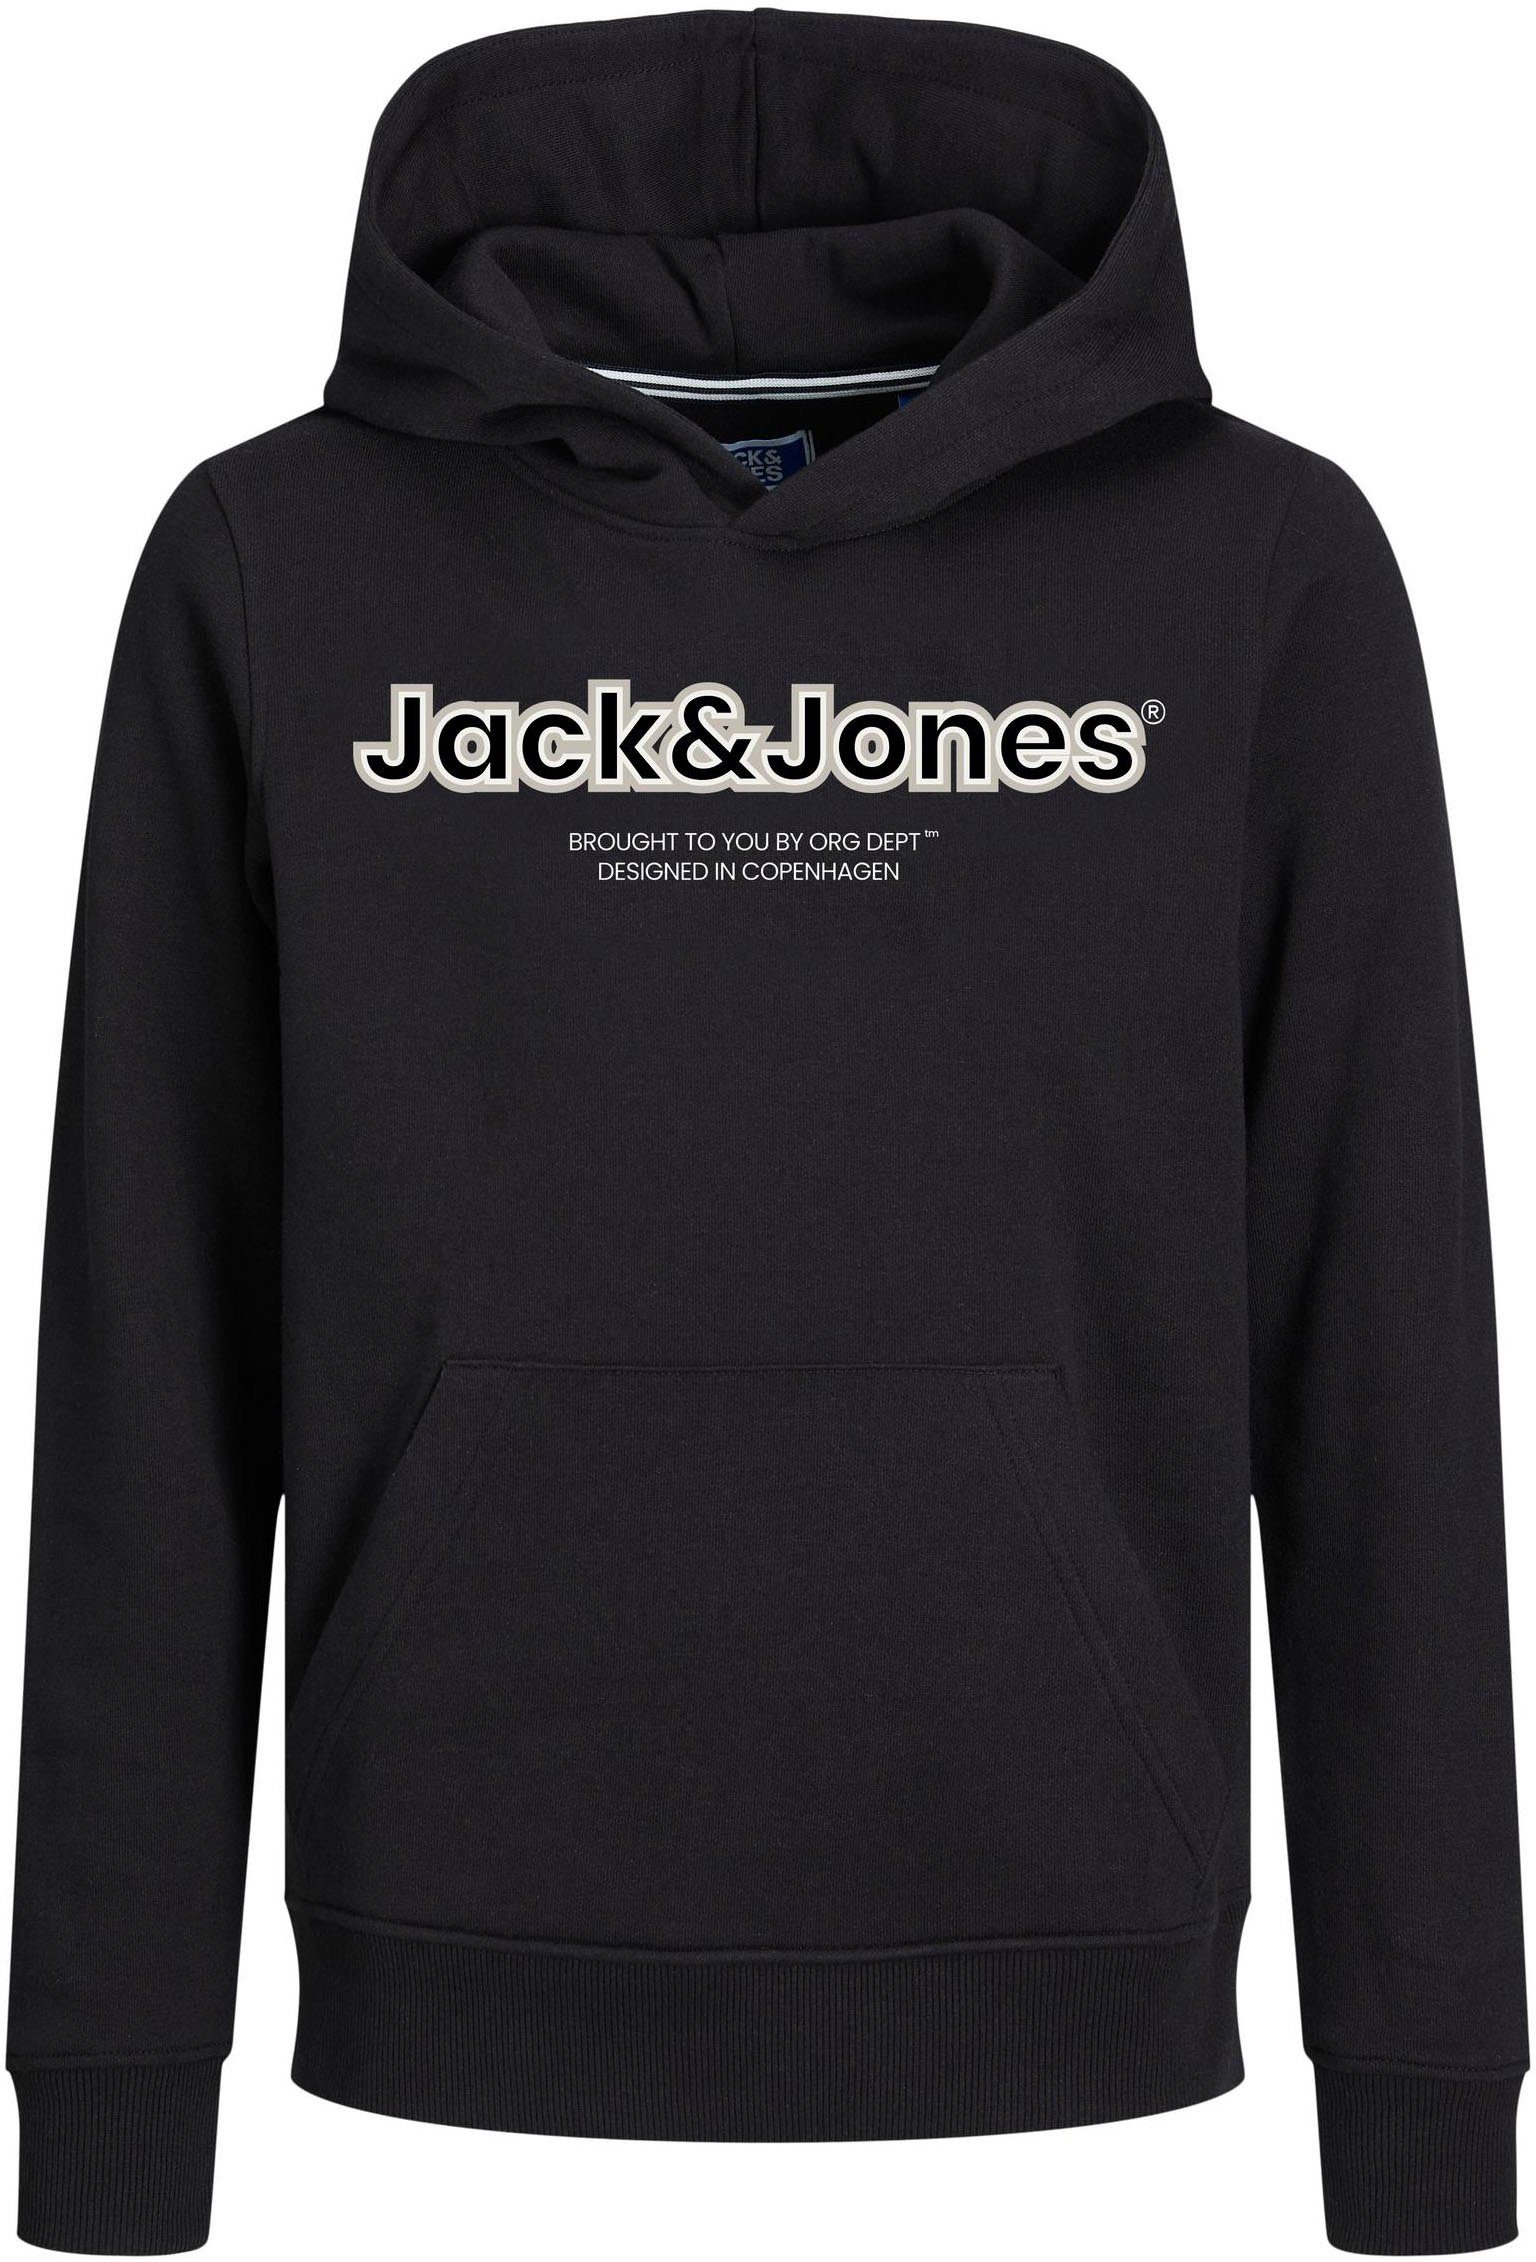 Jack & jones JUNIOR hoodie JORLAKEWOOD met logo zwart Sweater Logo 152